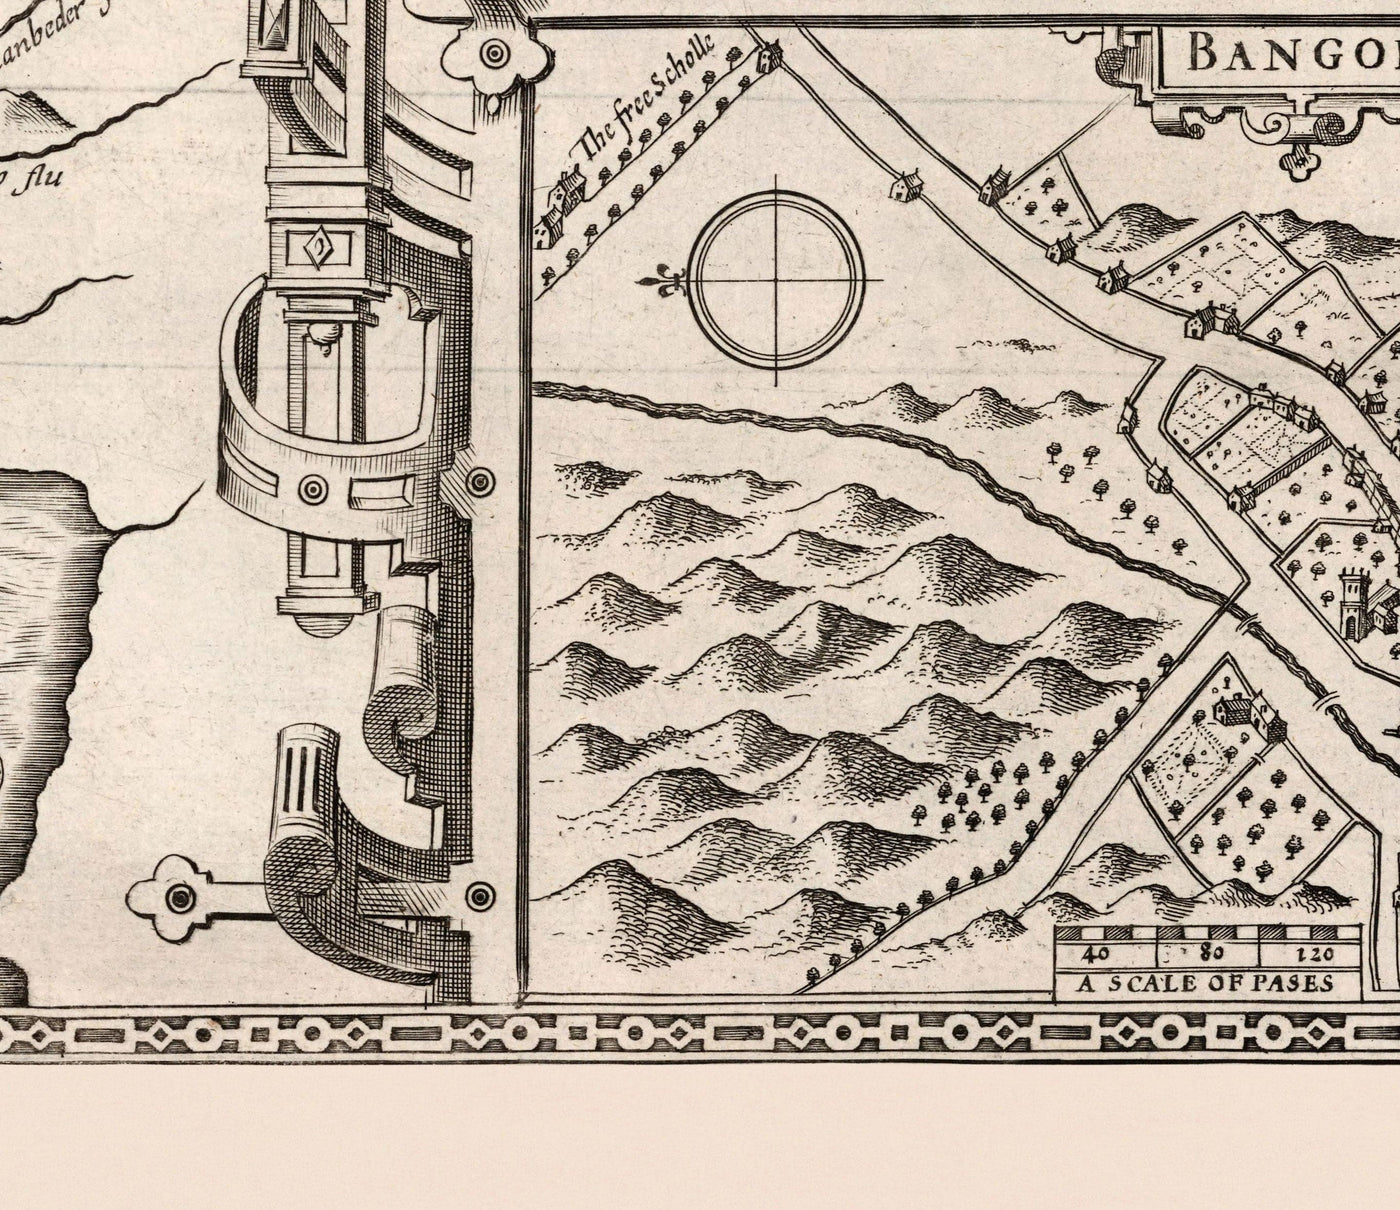 Alte monochrome Karte von Caernarfonshire, Wales, 1611 von John Speed ​​- Caernarfon, Snowdon, Gwynedd, Bangor